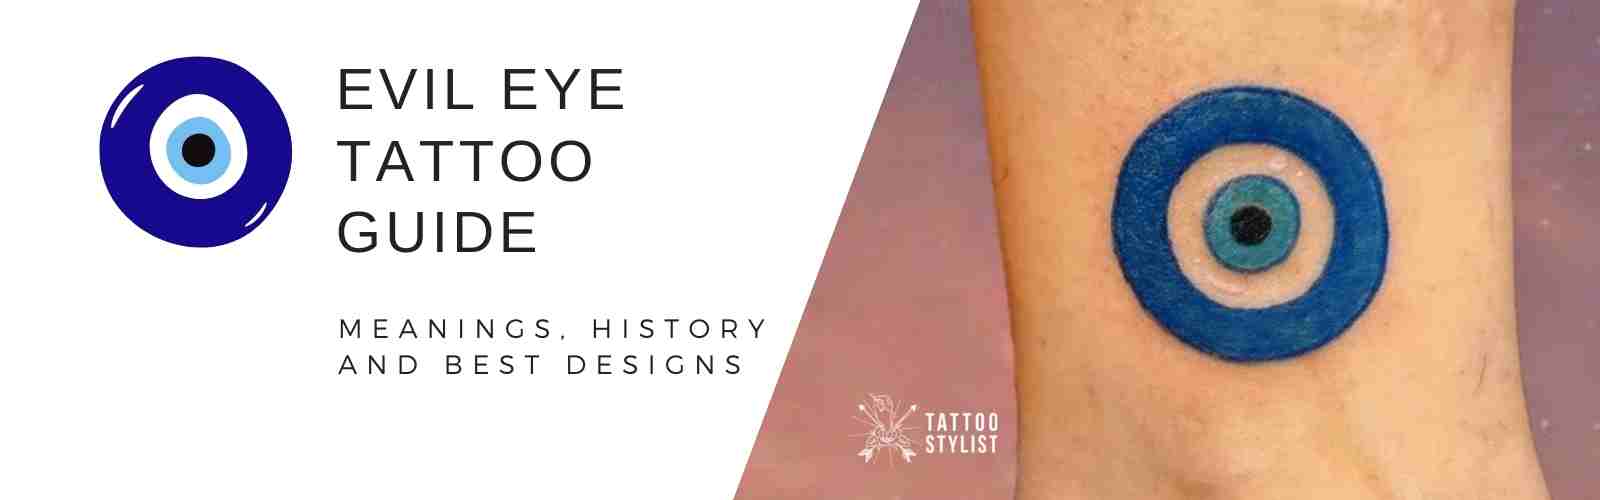 evil eye tattoo banner image